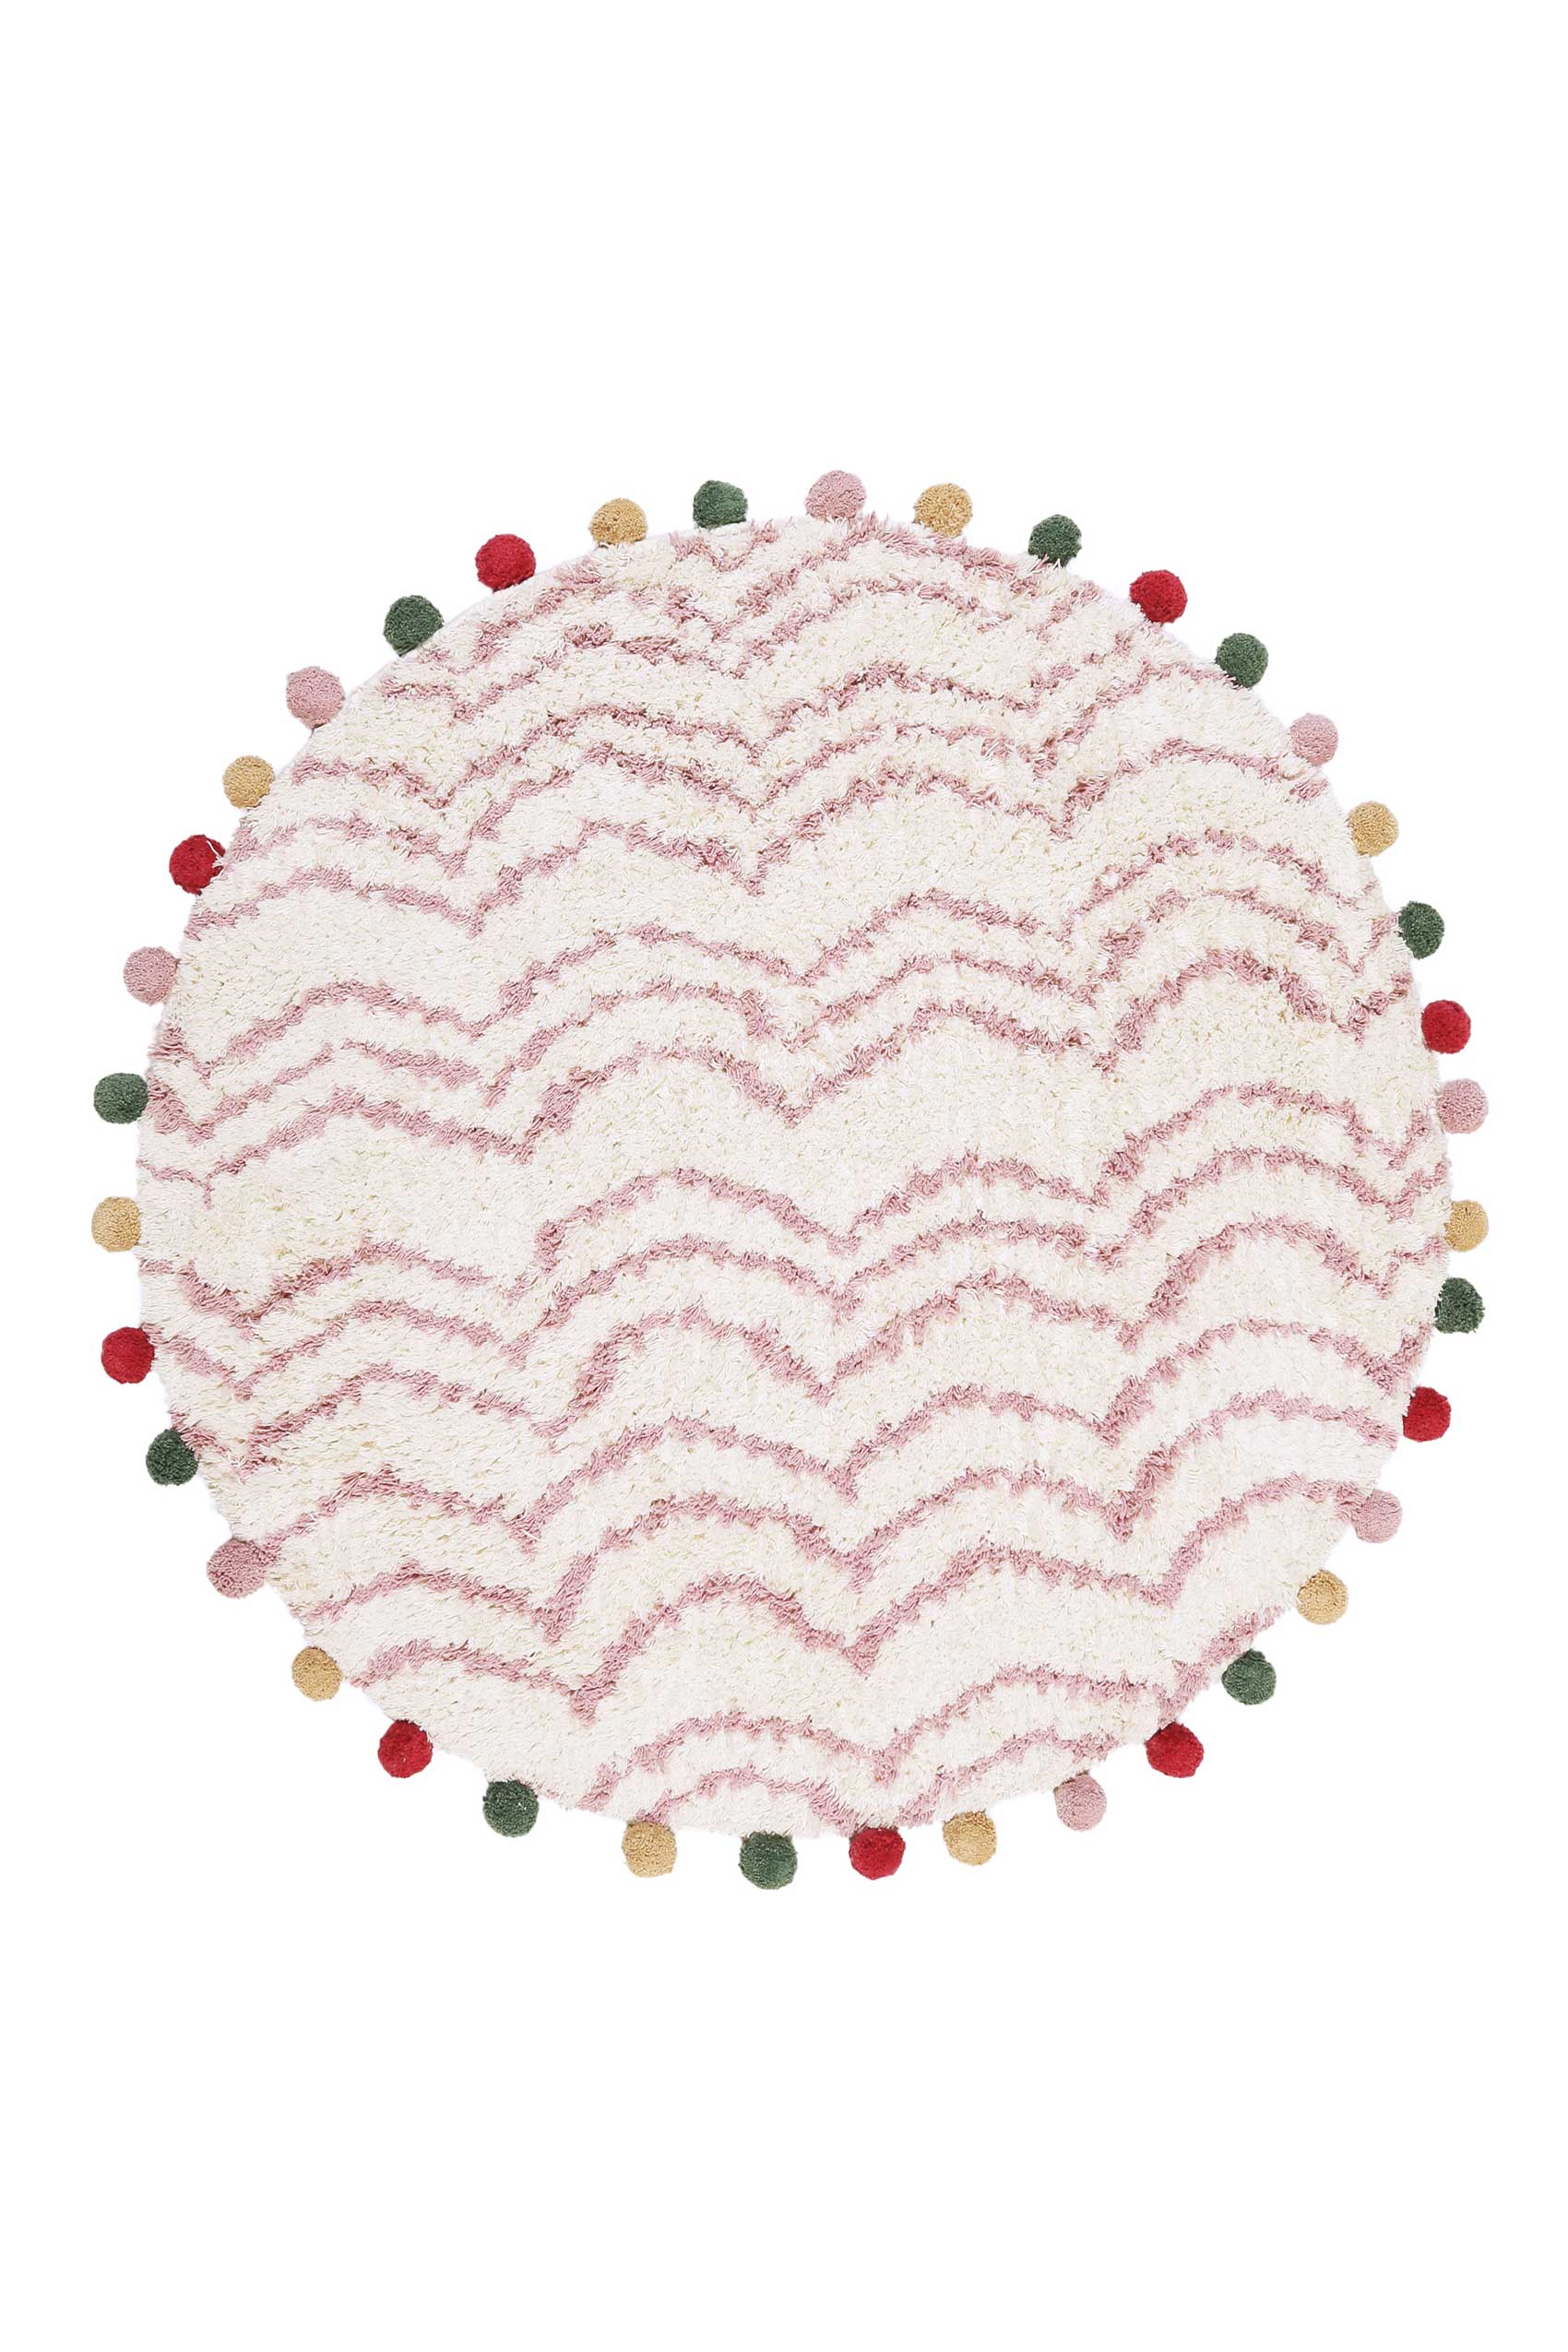 Esprit Handwebteppich Rund Beige Rosa aus Baumwolle » Circus « - Ansicht 1